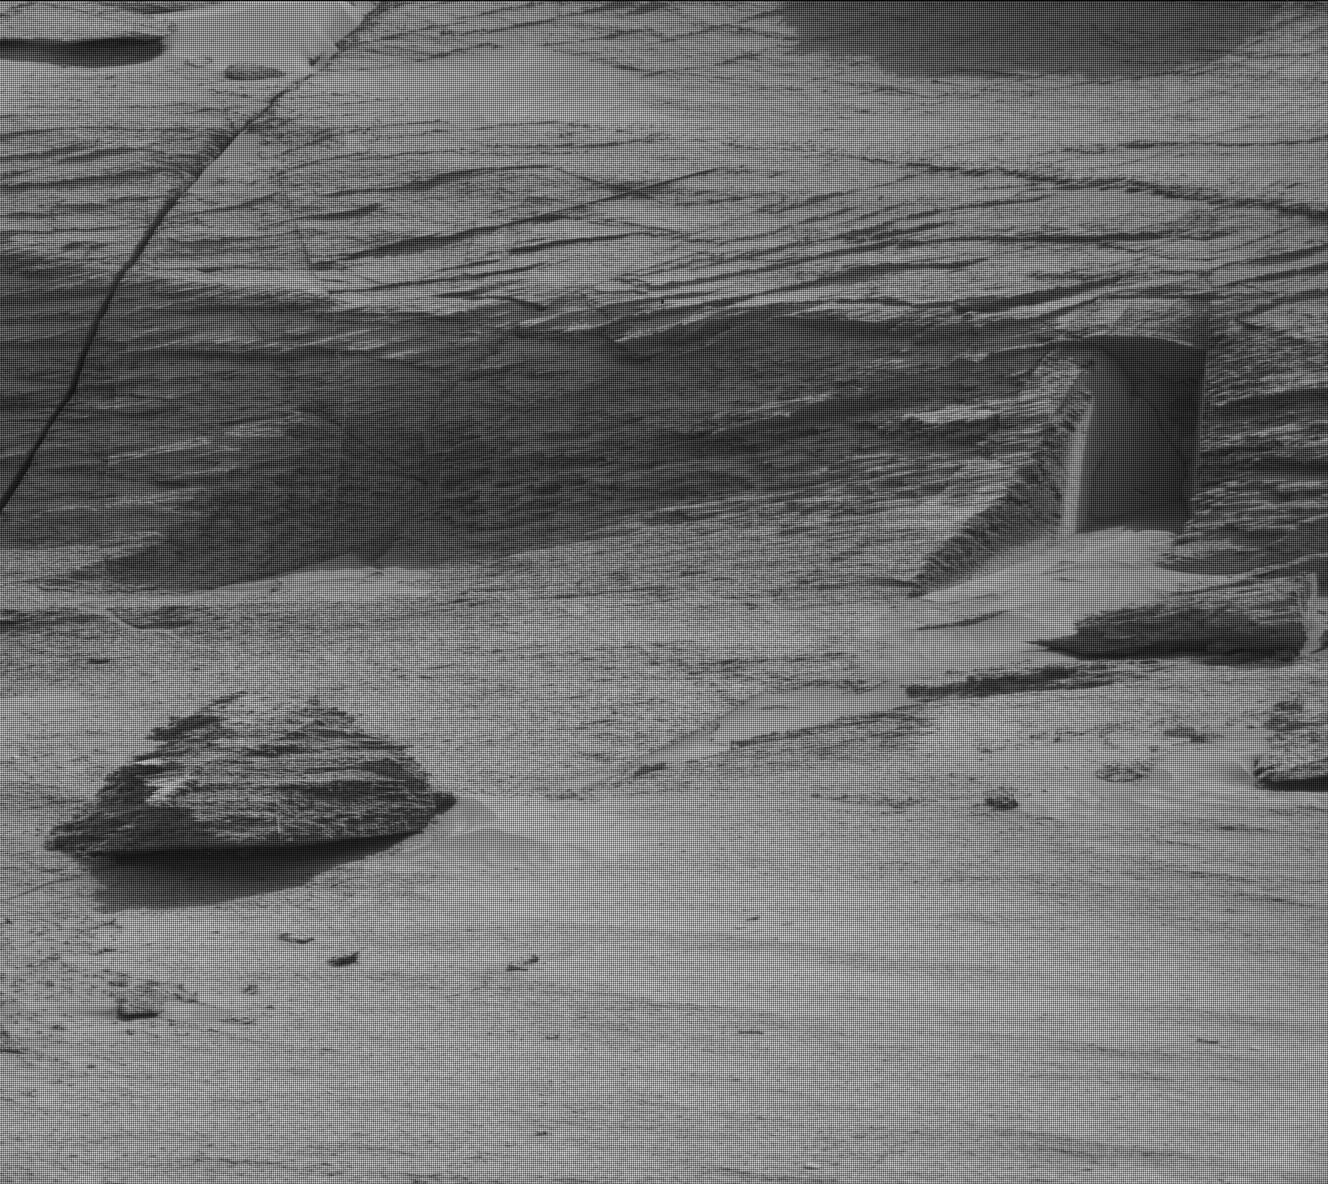 Caçadores de alienígenas descobrem algo surpreendente em Marte